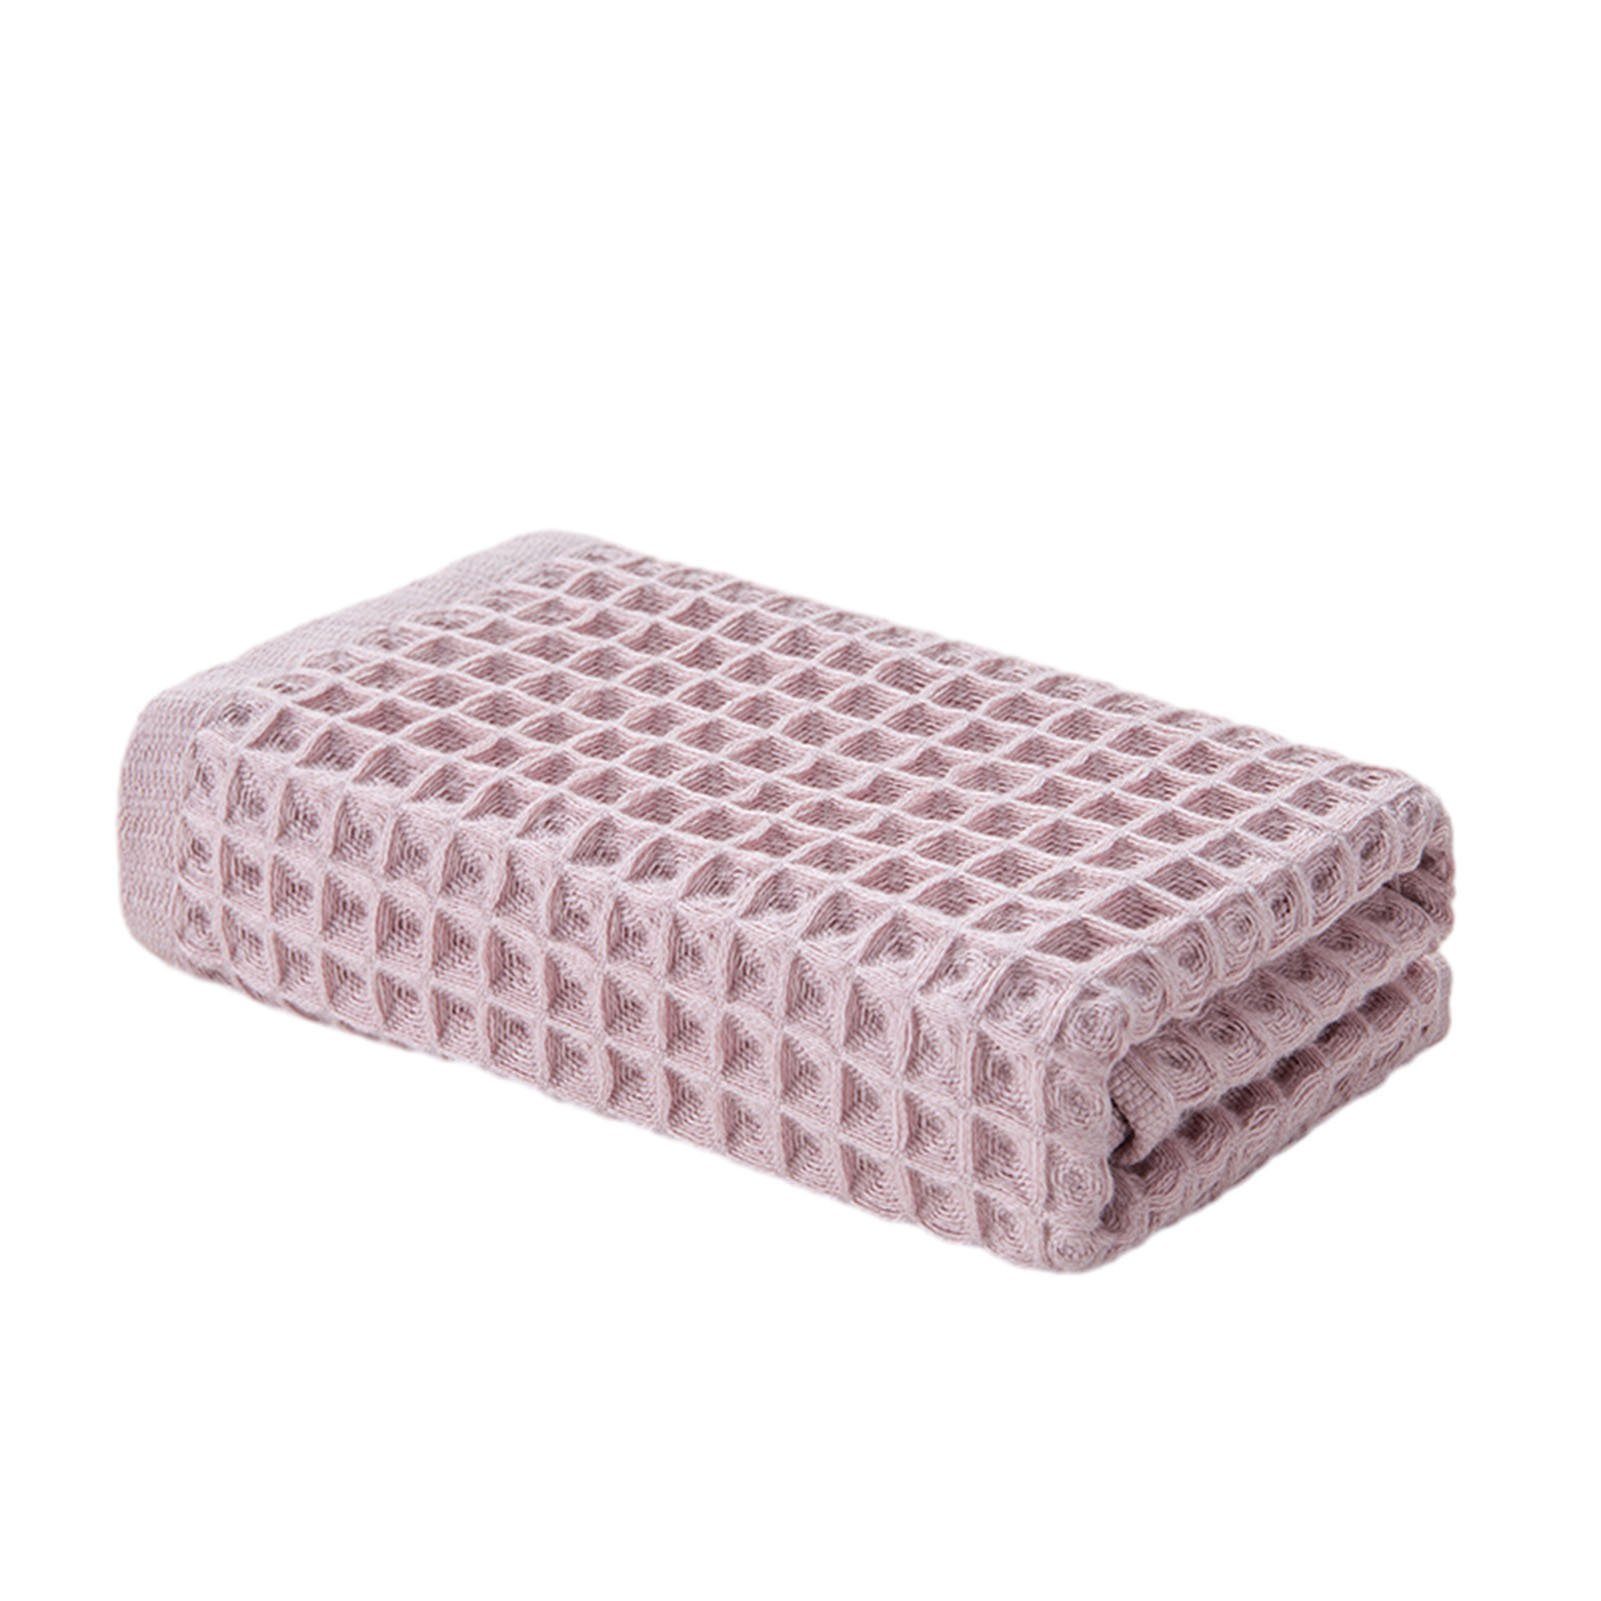 [Qualität zuerst] Blusmart Handtuch Set Waffel-Gesichtswaschlappen Schnell Erwachsene, pink Trocknendes Für